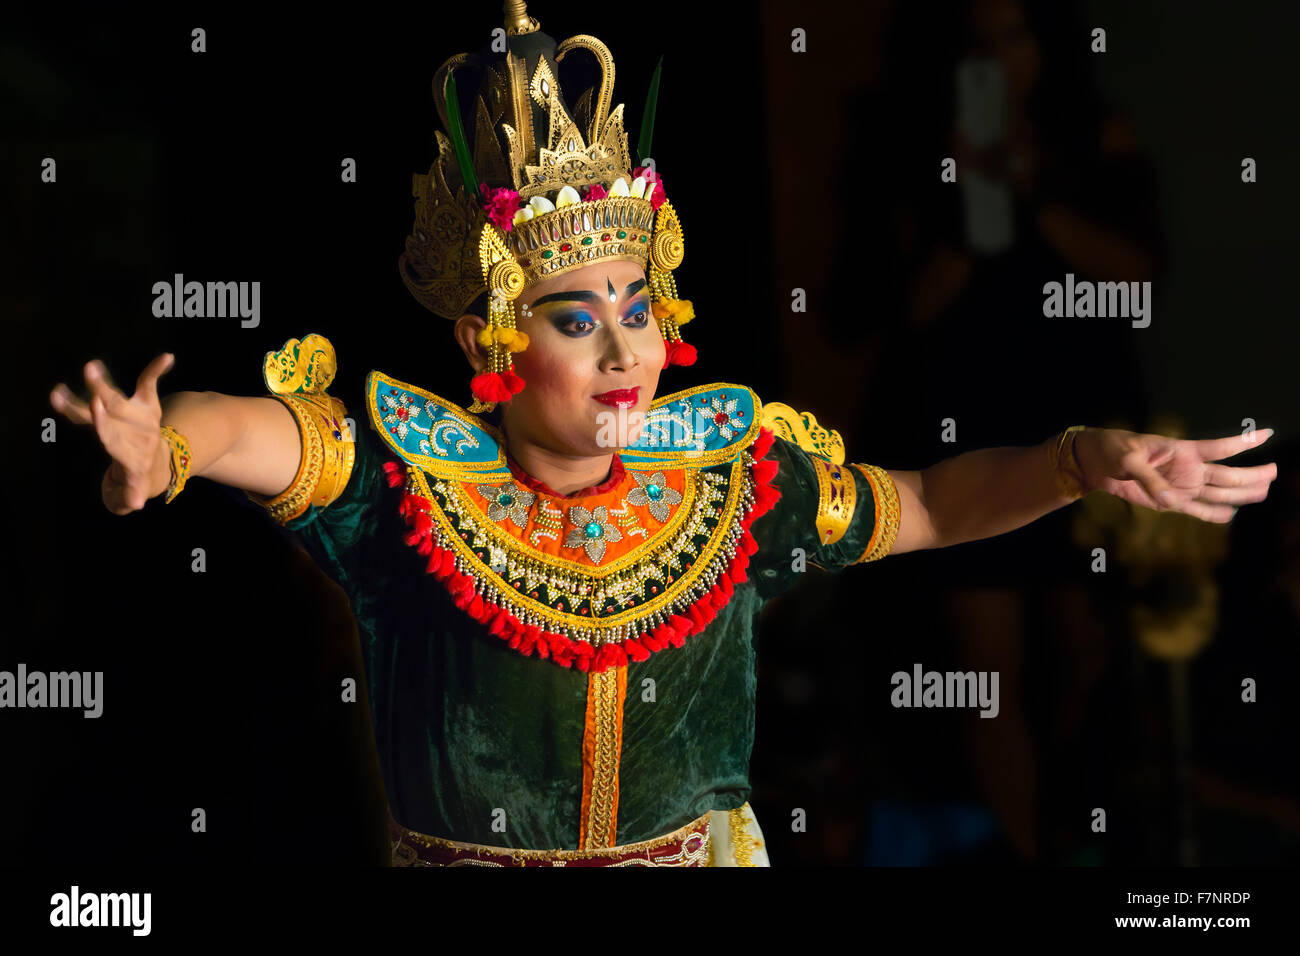 Indonesia, Bali, Ubud, Balinese dancer dancing Barong Stock Photo